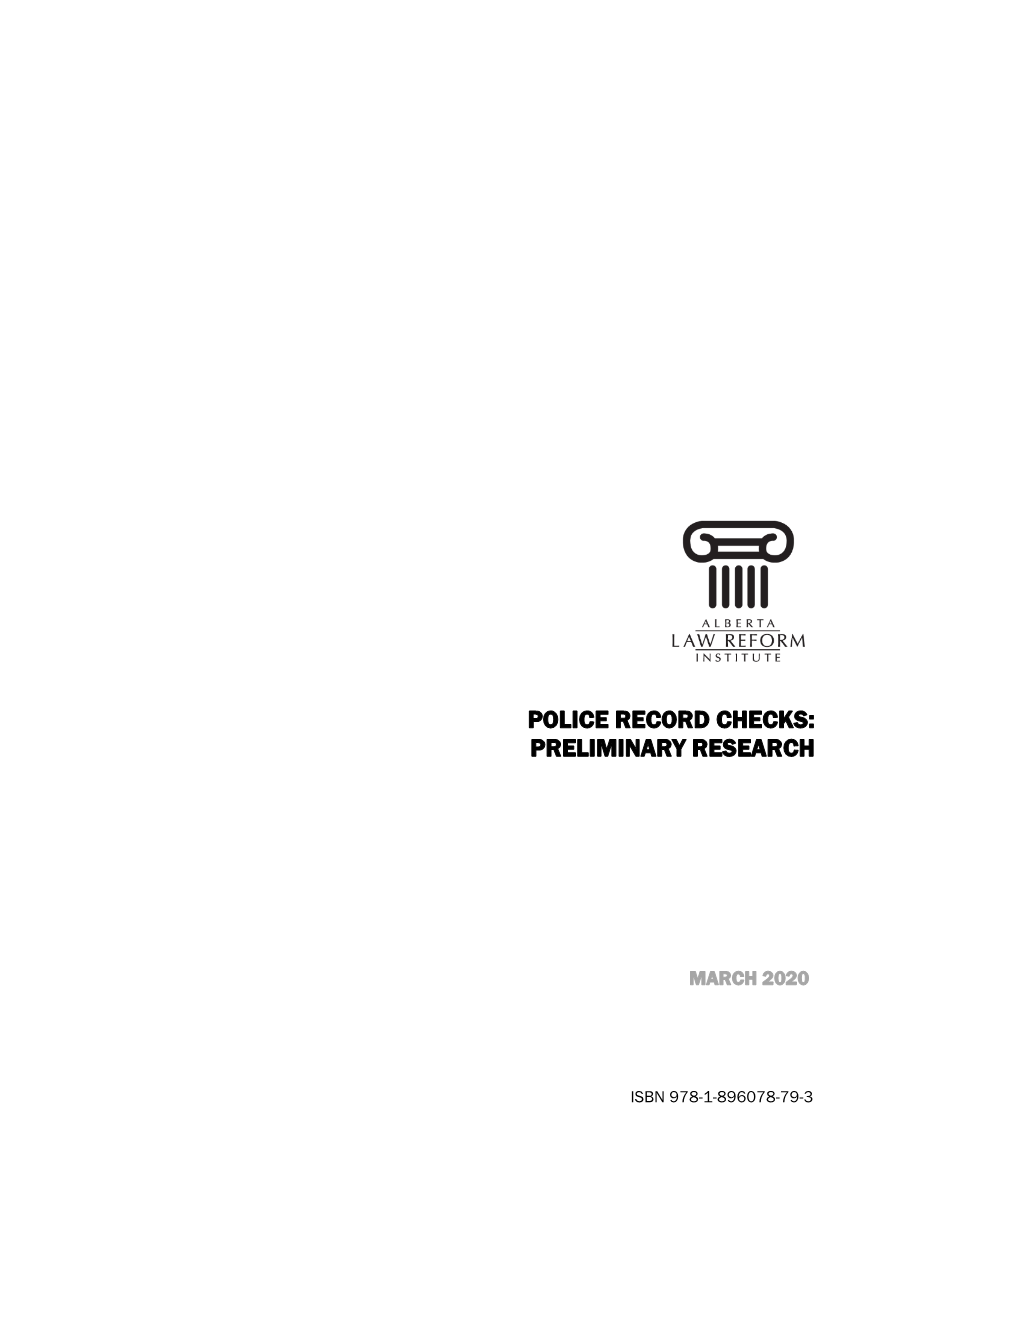 Police Record Checks: Preliminary Research